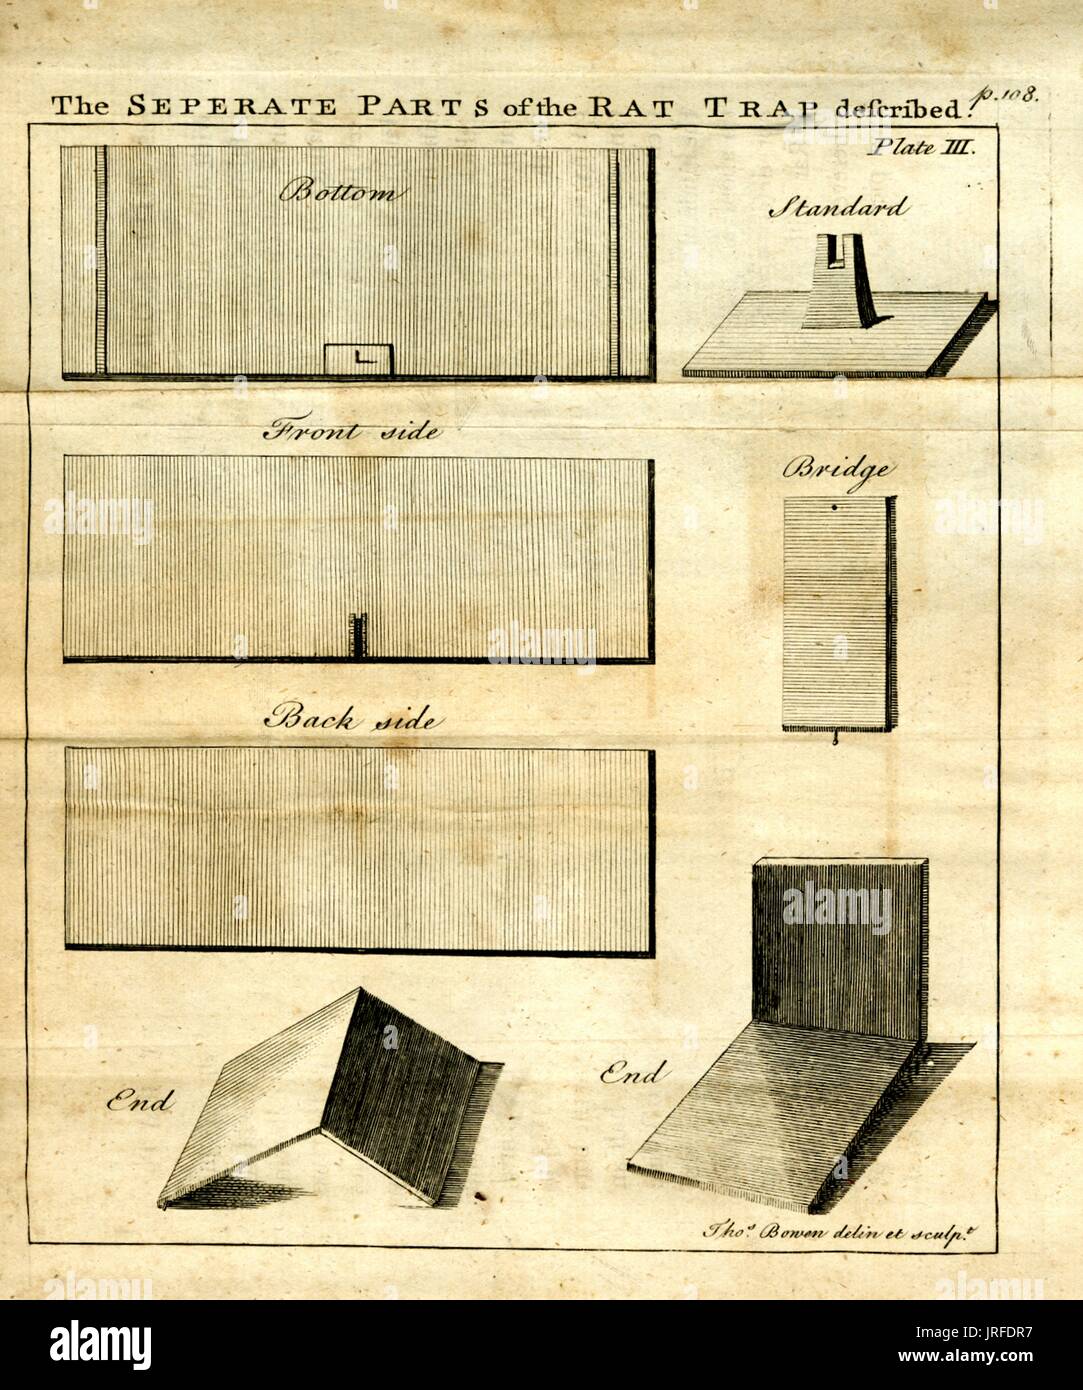 Les parties séparées du rat trap décrites, illustration de flat pack board d'une invention description représentant une meilleure souricière, 1900. Banque D'Images